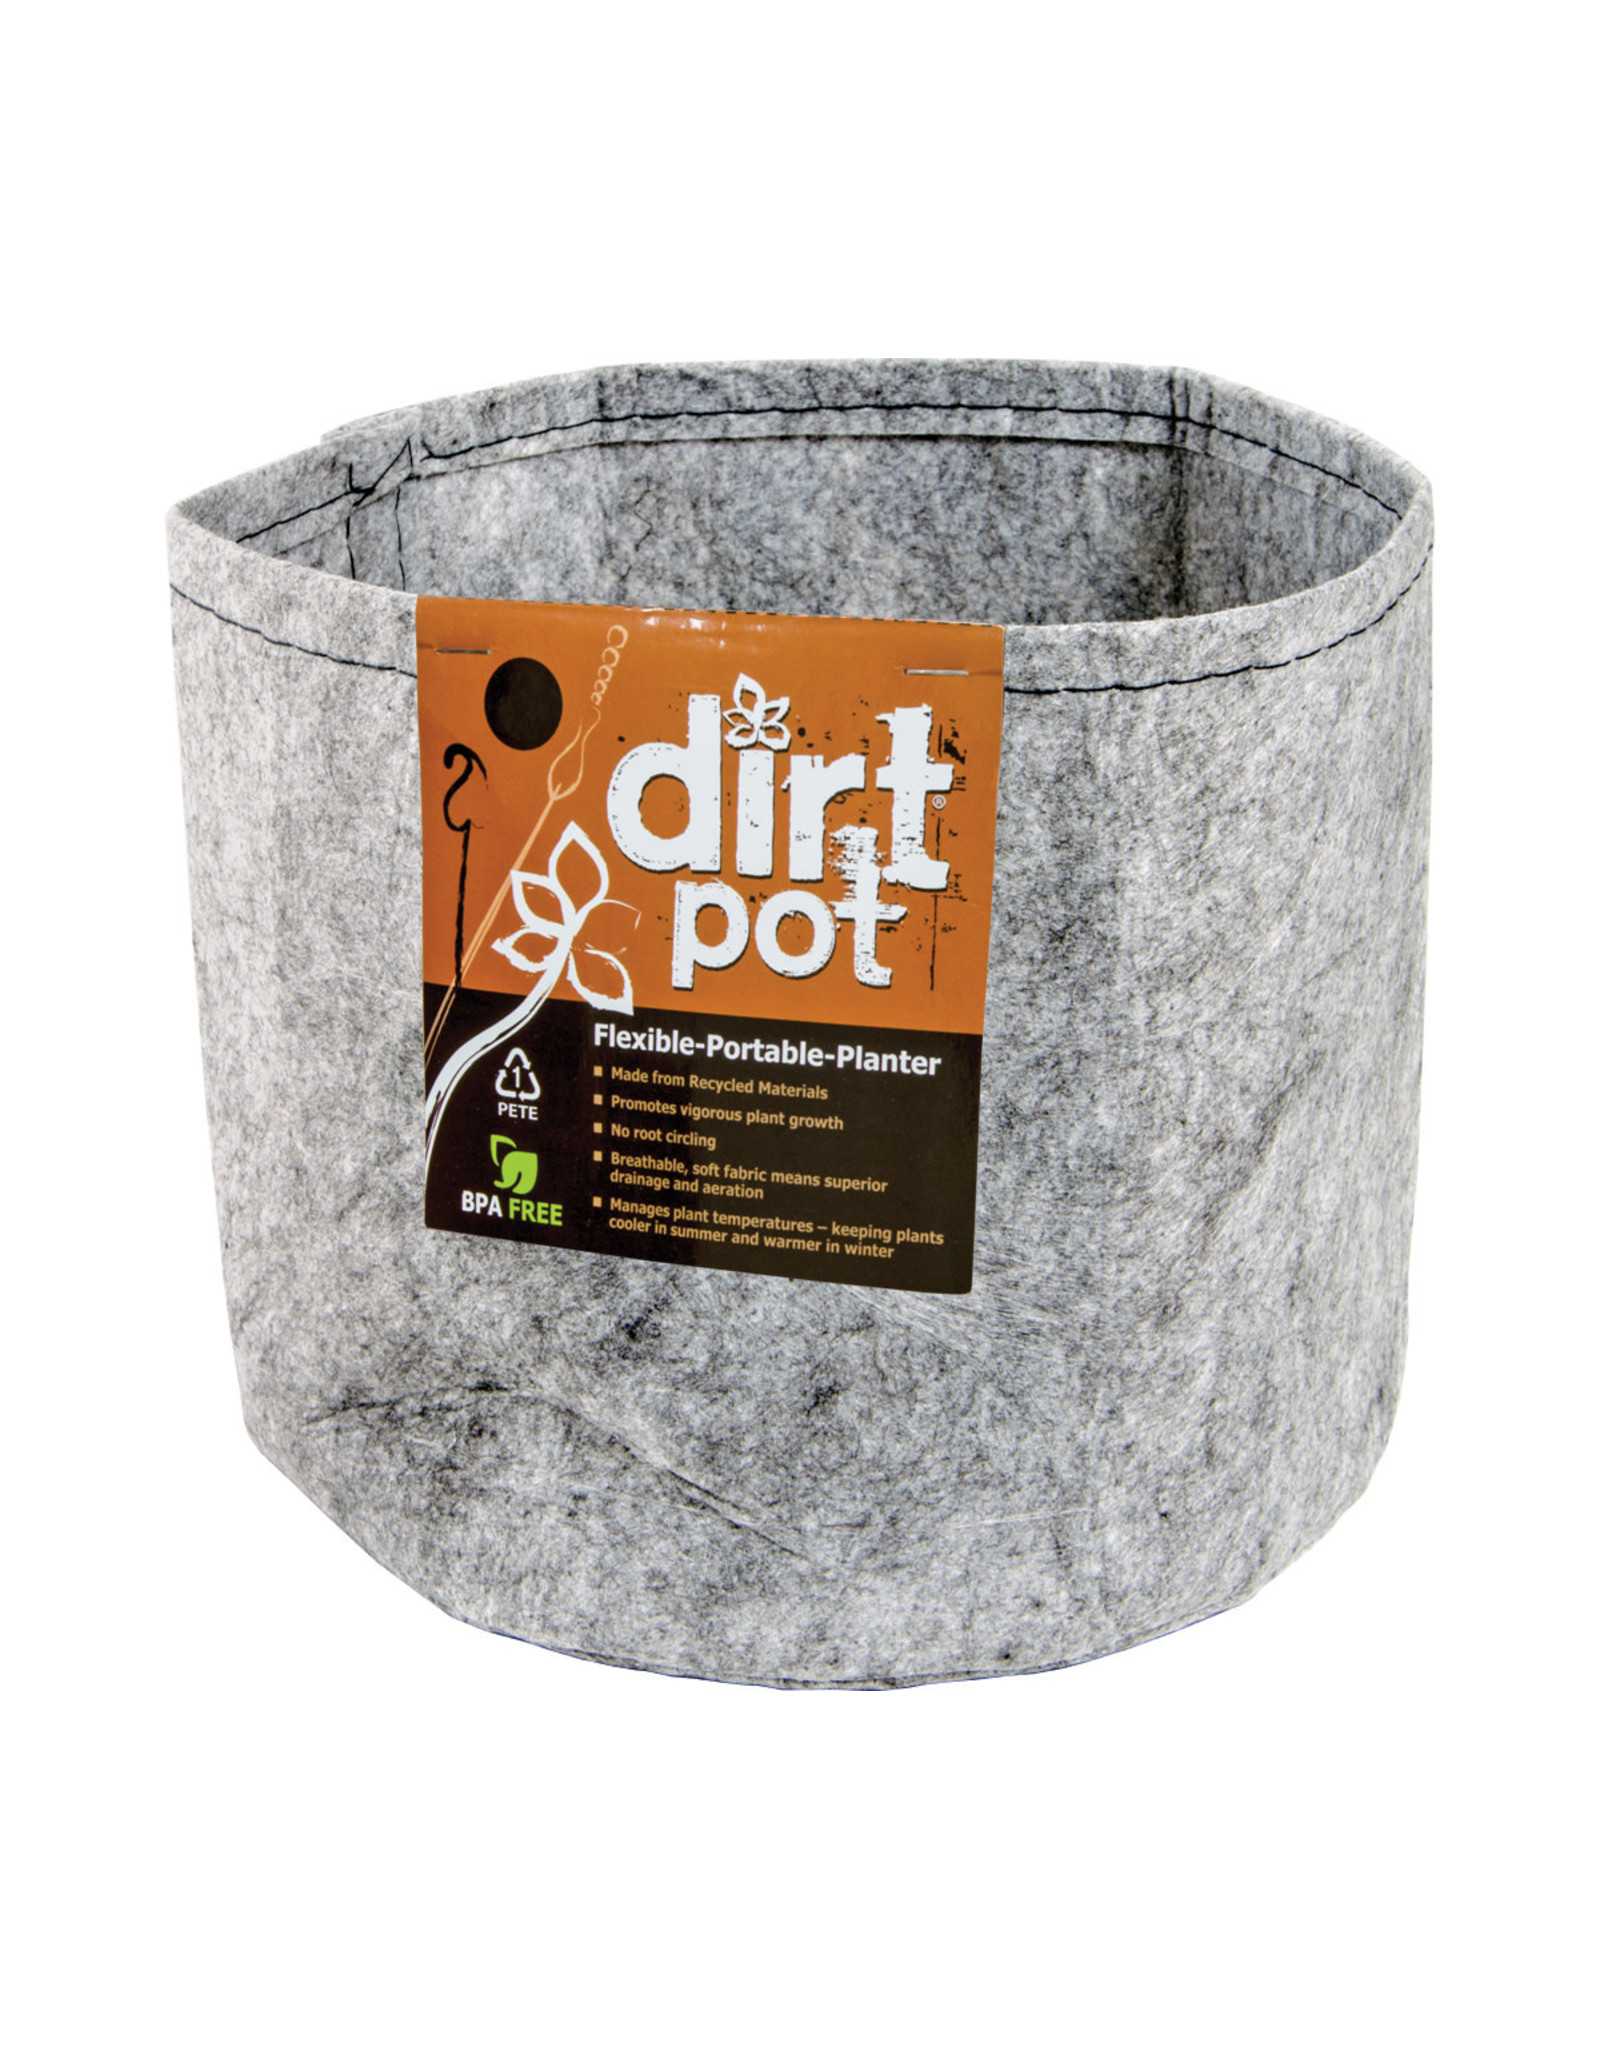 Dirt Pot Dirt Pot Flexible Portable Planter, Grey, 3 gallon, no handles